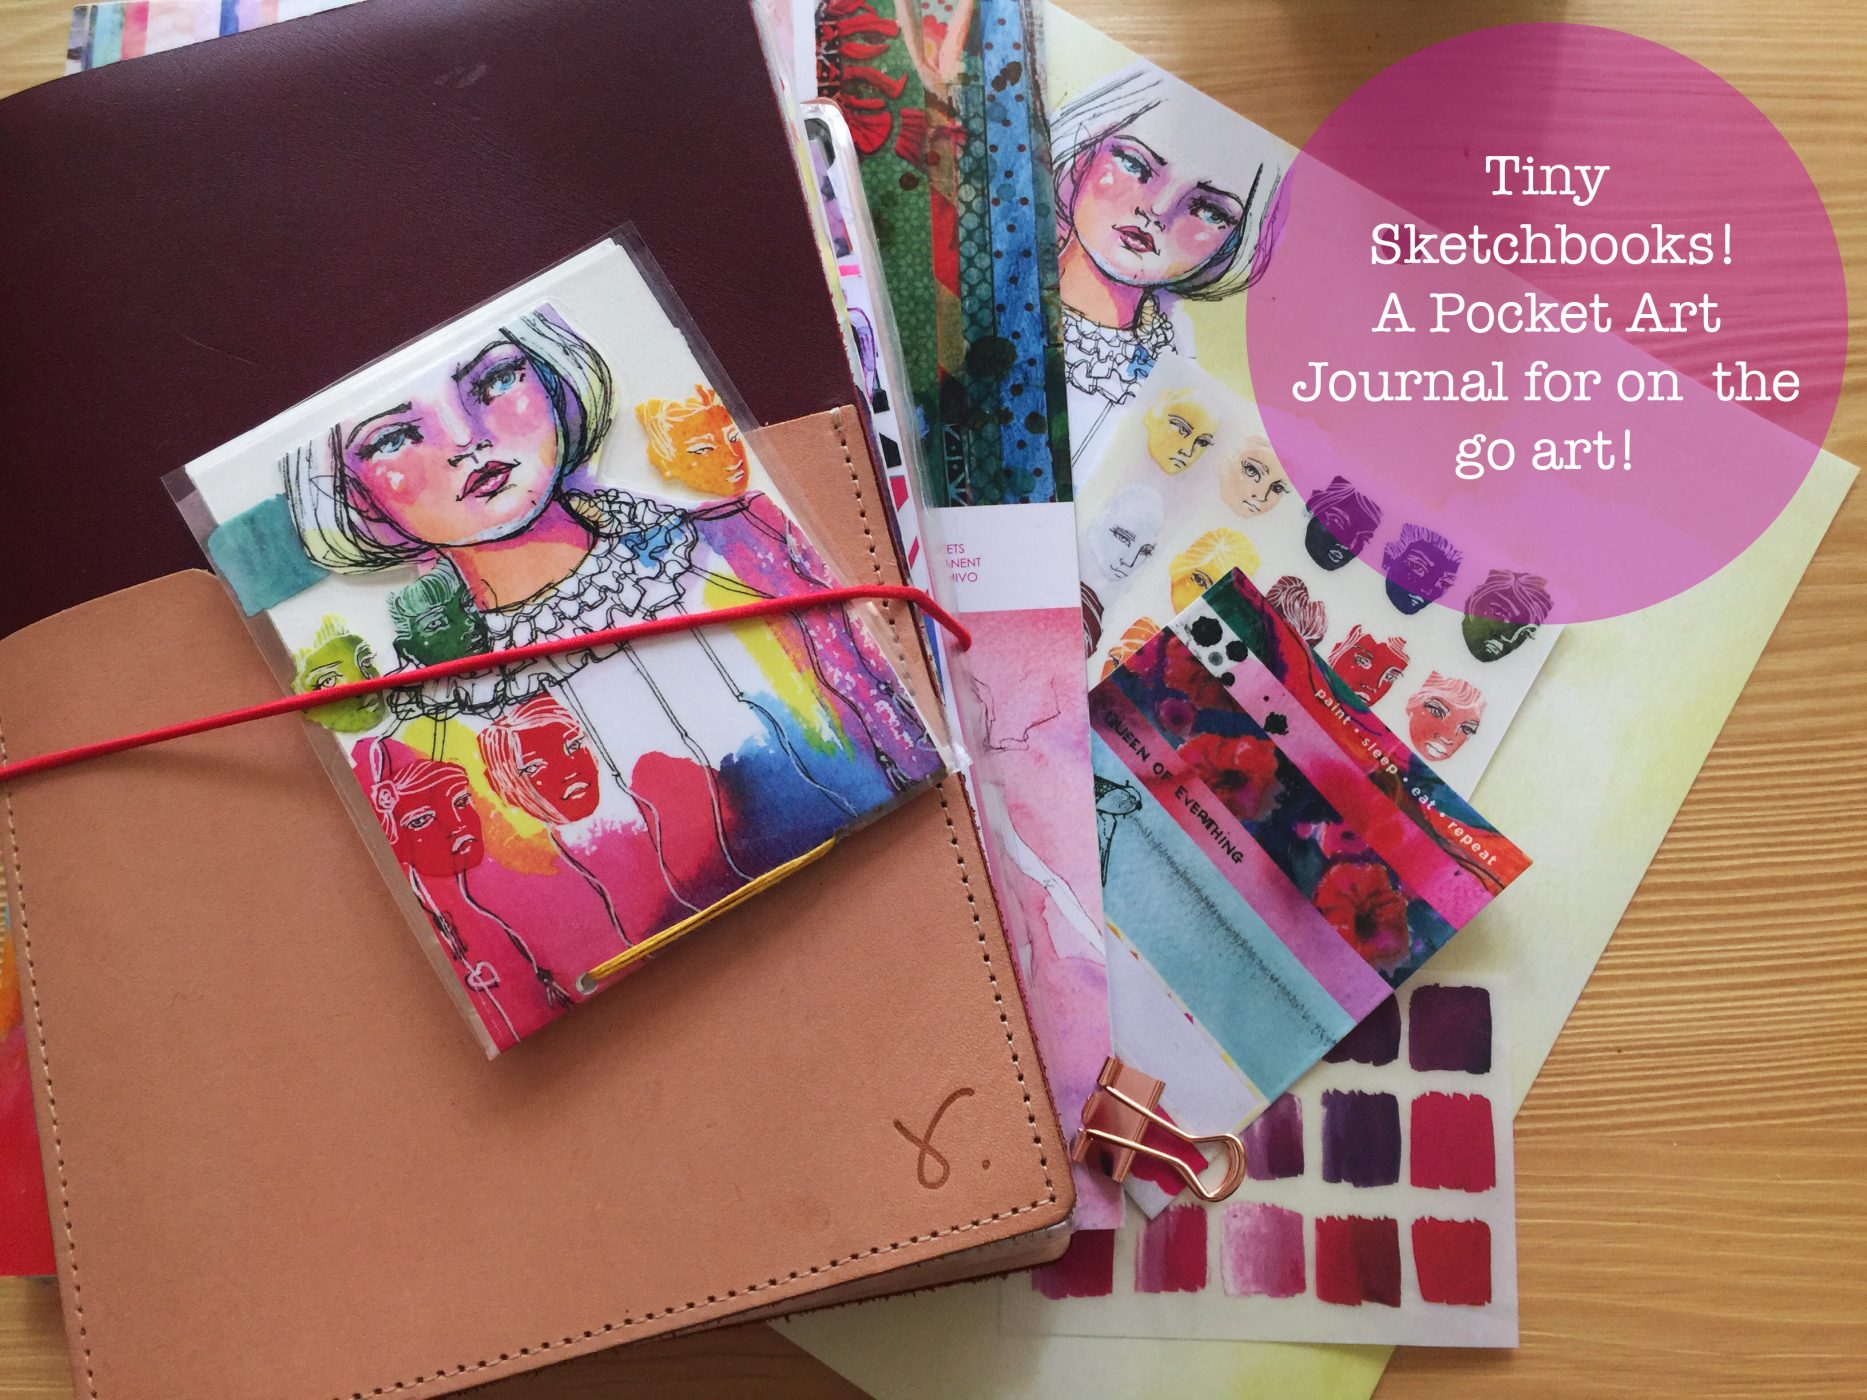 Tiny Sketchbooks! – Little Art Journals for on the go Art!